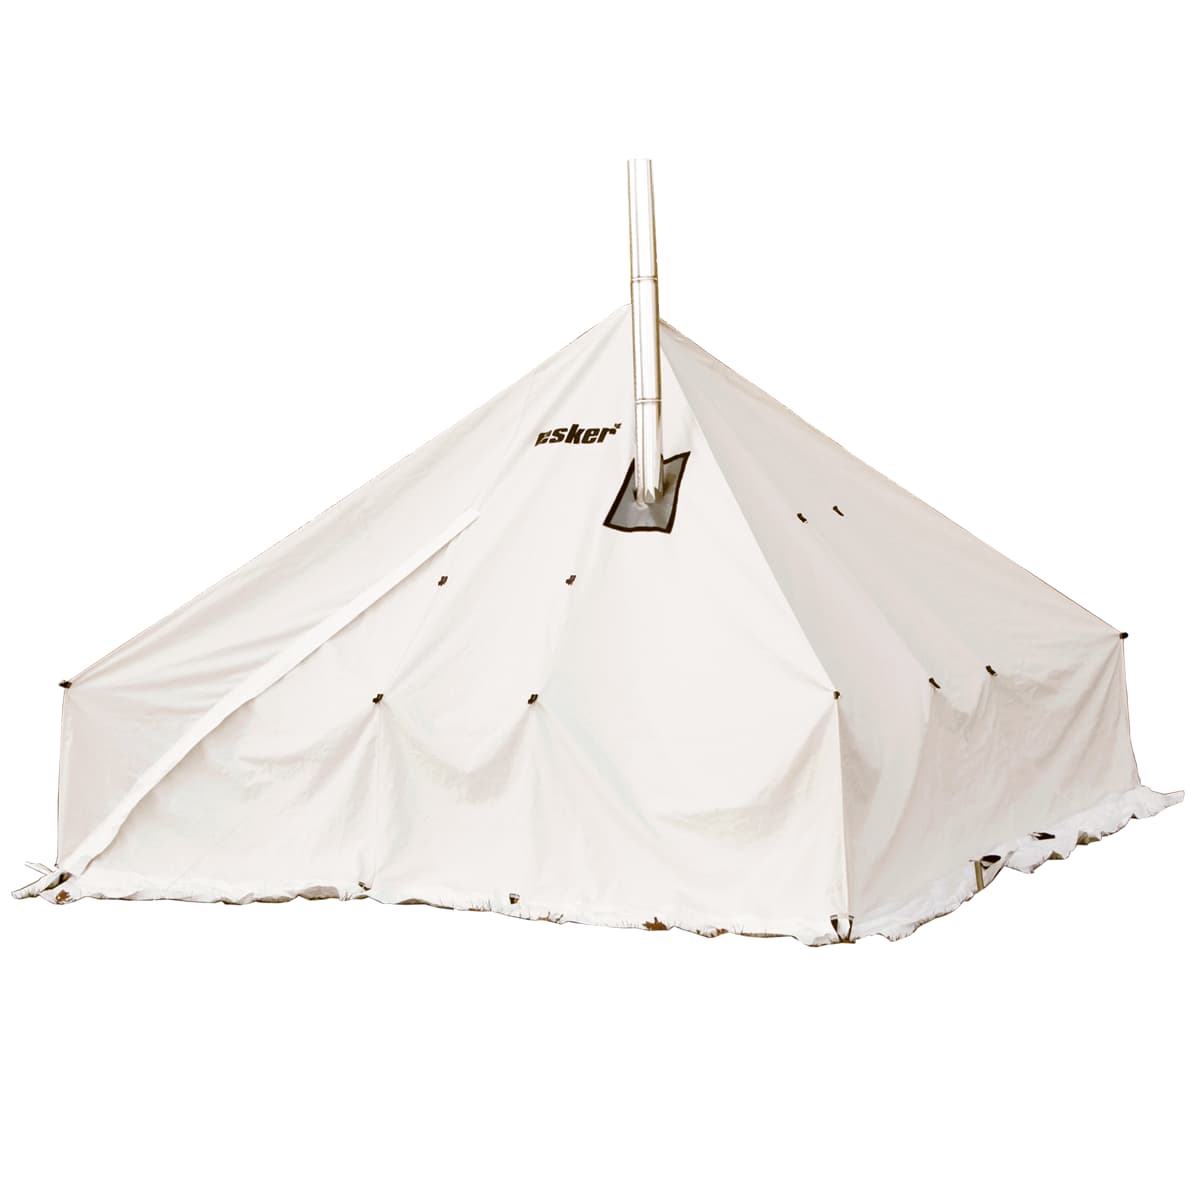 Esker Classic Winter Camping Hot Tent - 12x12